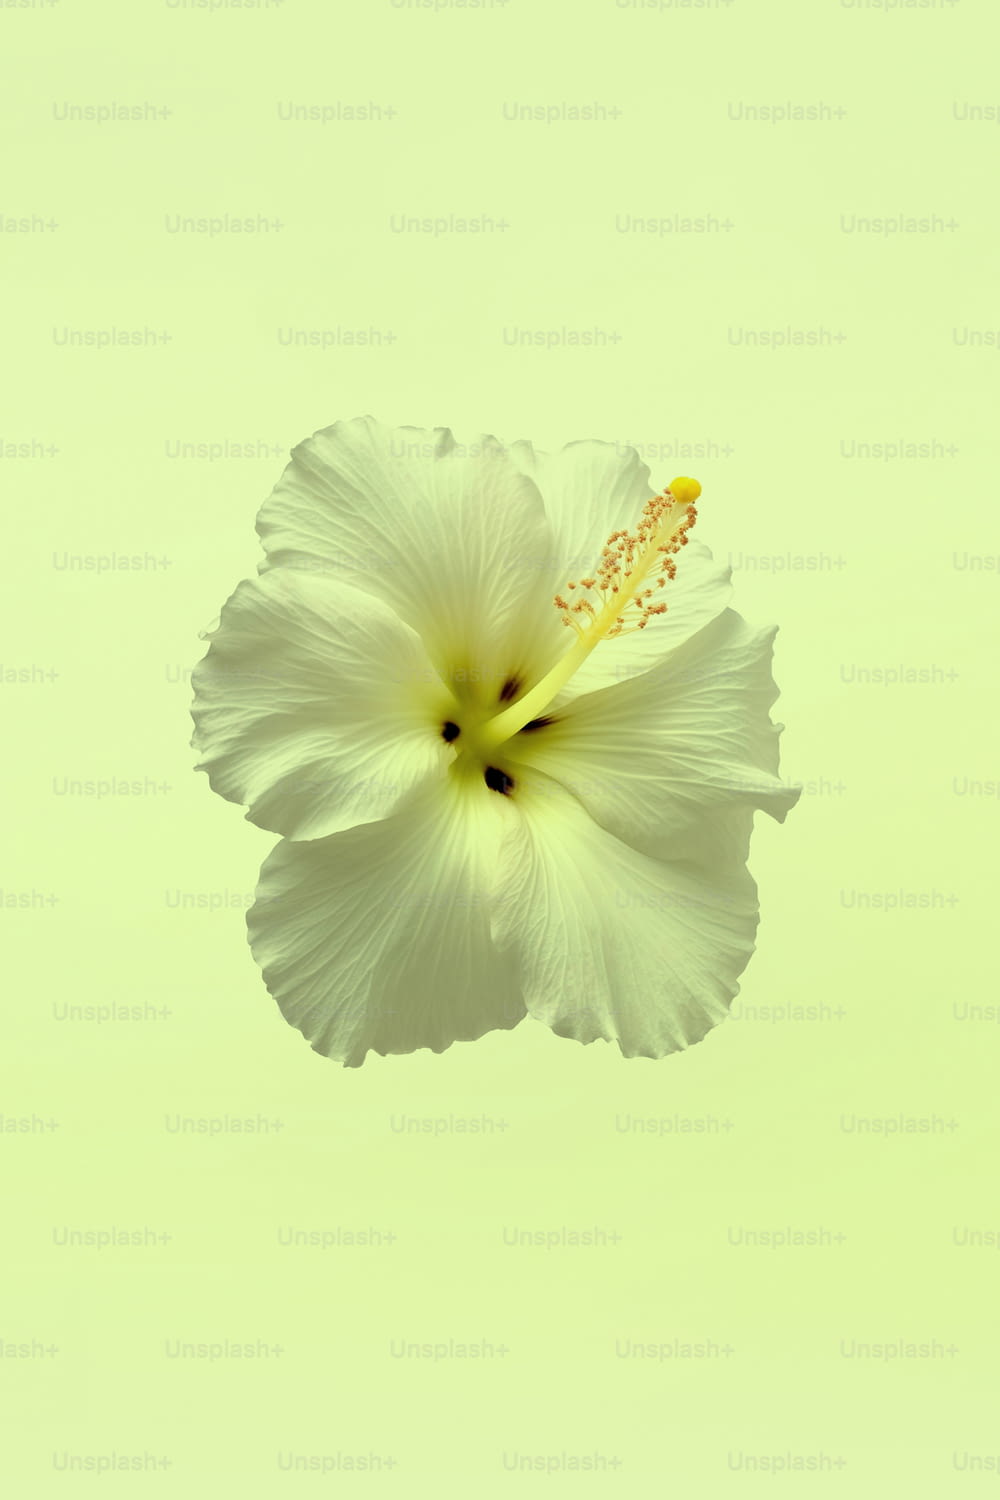 Una flor blanca con un centro amarillo en el aire